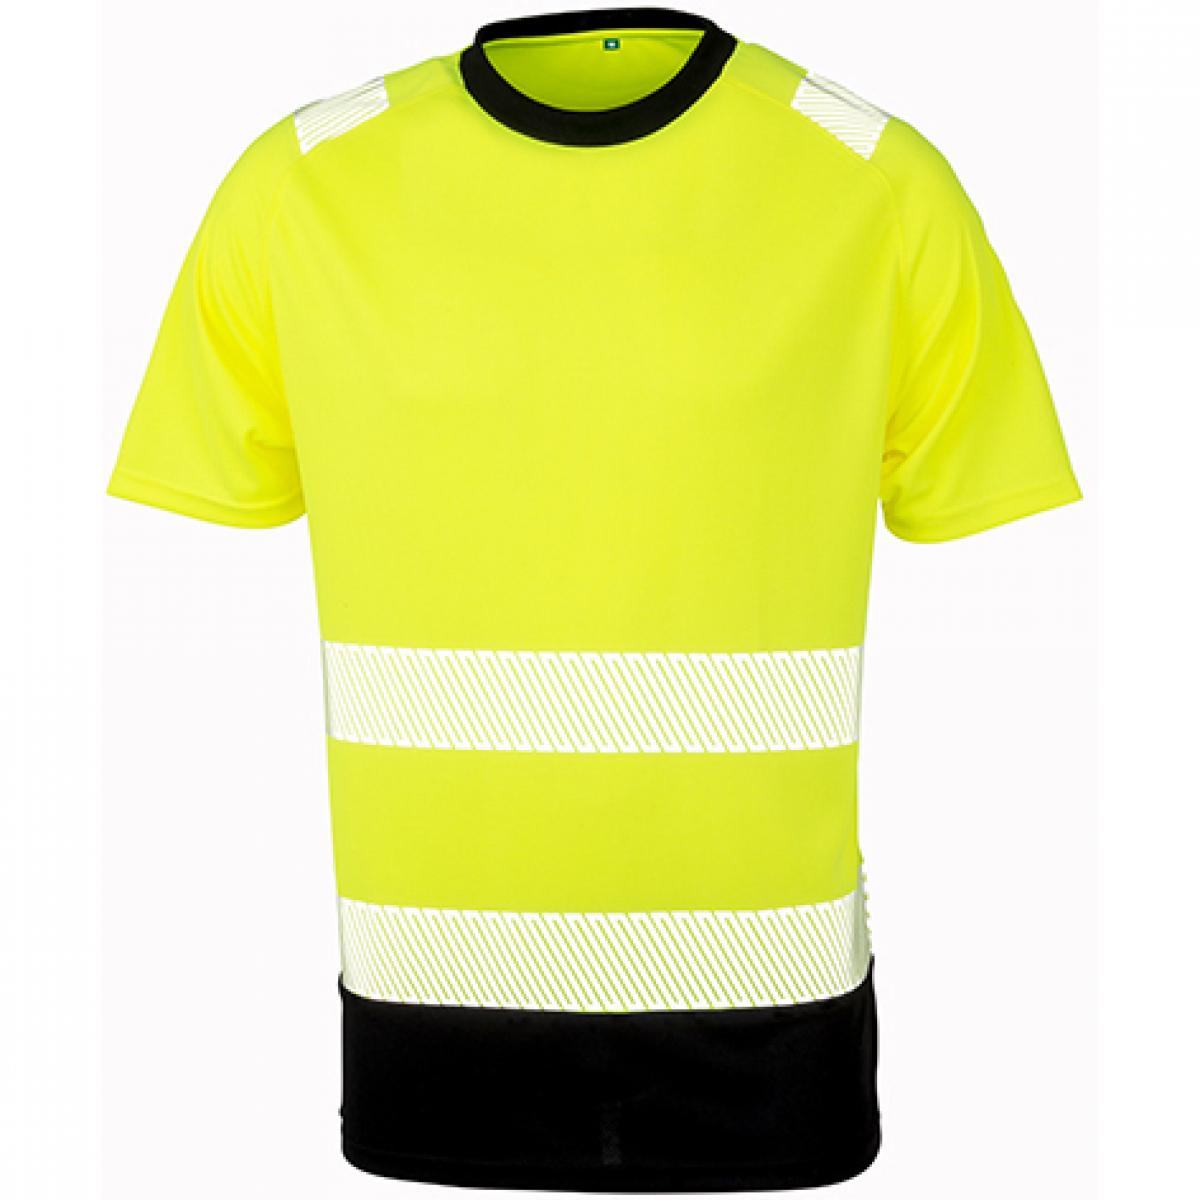 Hersteller: Result Genuine Recycled Herstellernummer: R502X Artikelbezeichnung: Recycled Safety T-Shirt - Sicherheitstshirt - Atmungsaktiv Farbe: Fluorescent Yellow/Black